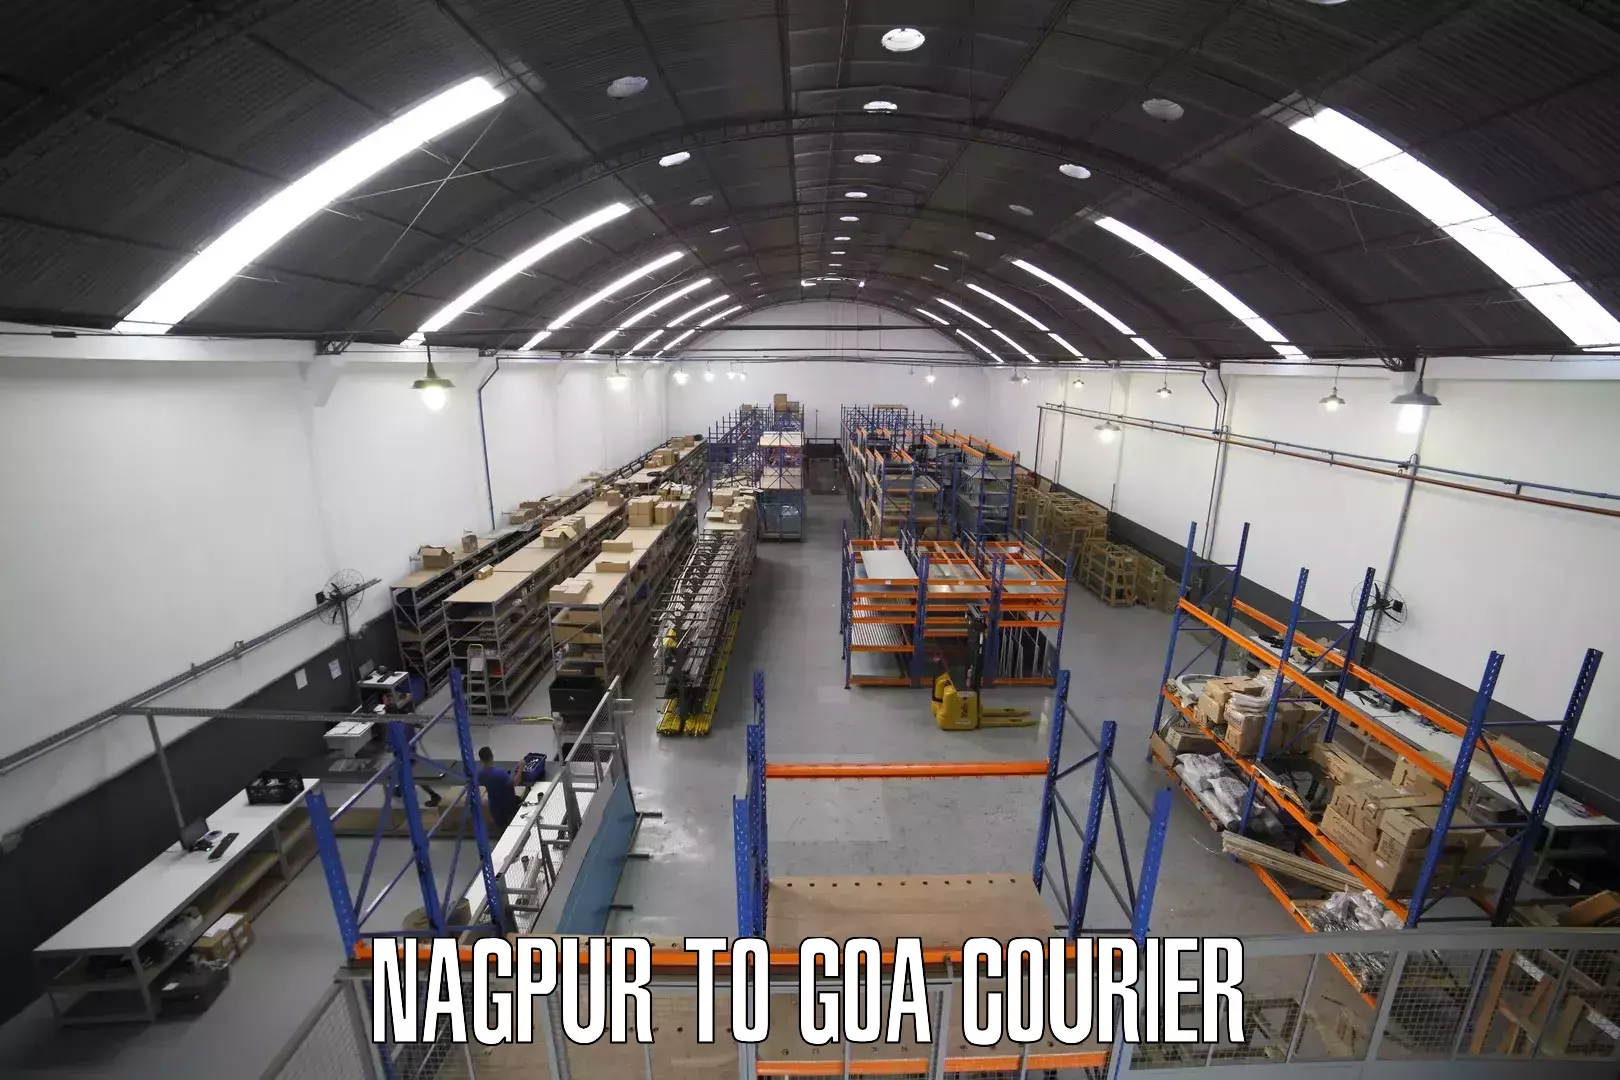 Ground shipping in Nagpur to Vasco da Gama